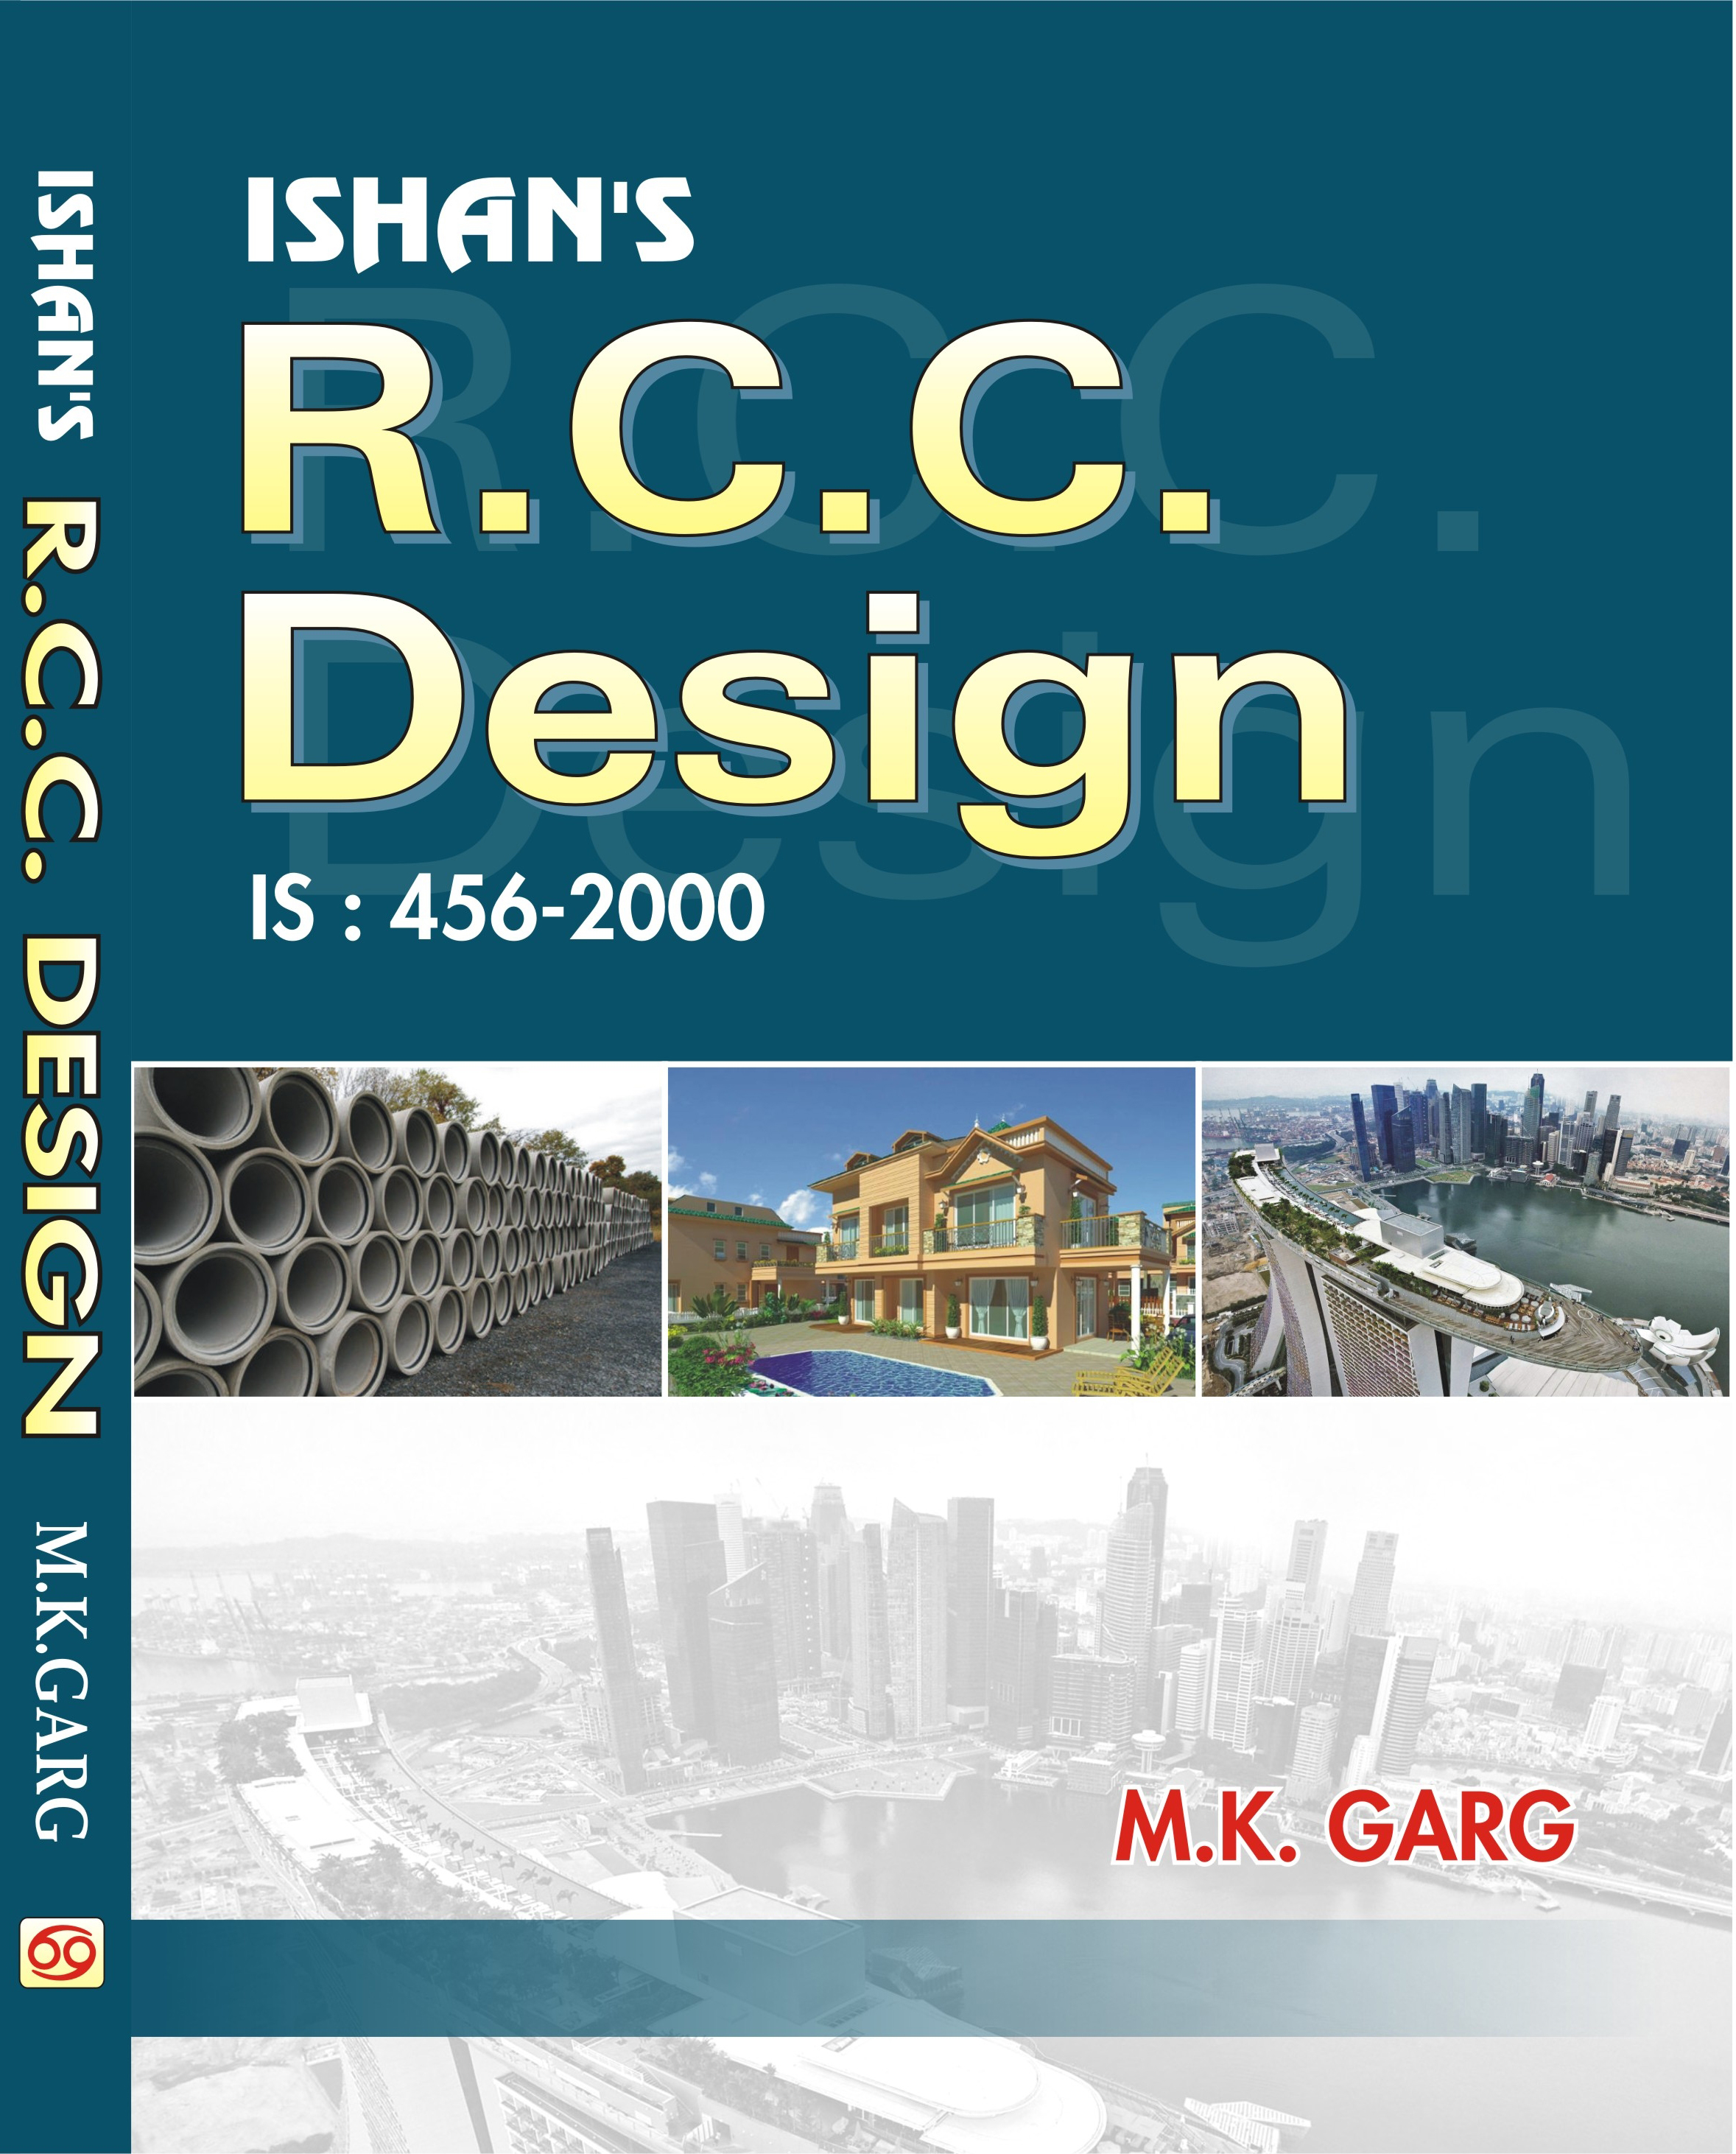 R.C.C. Design

IS:456-2000